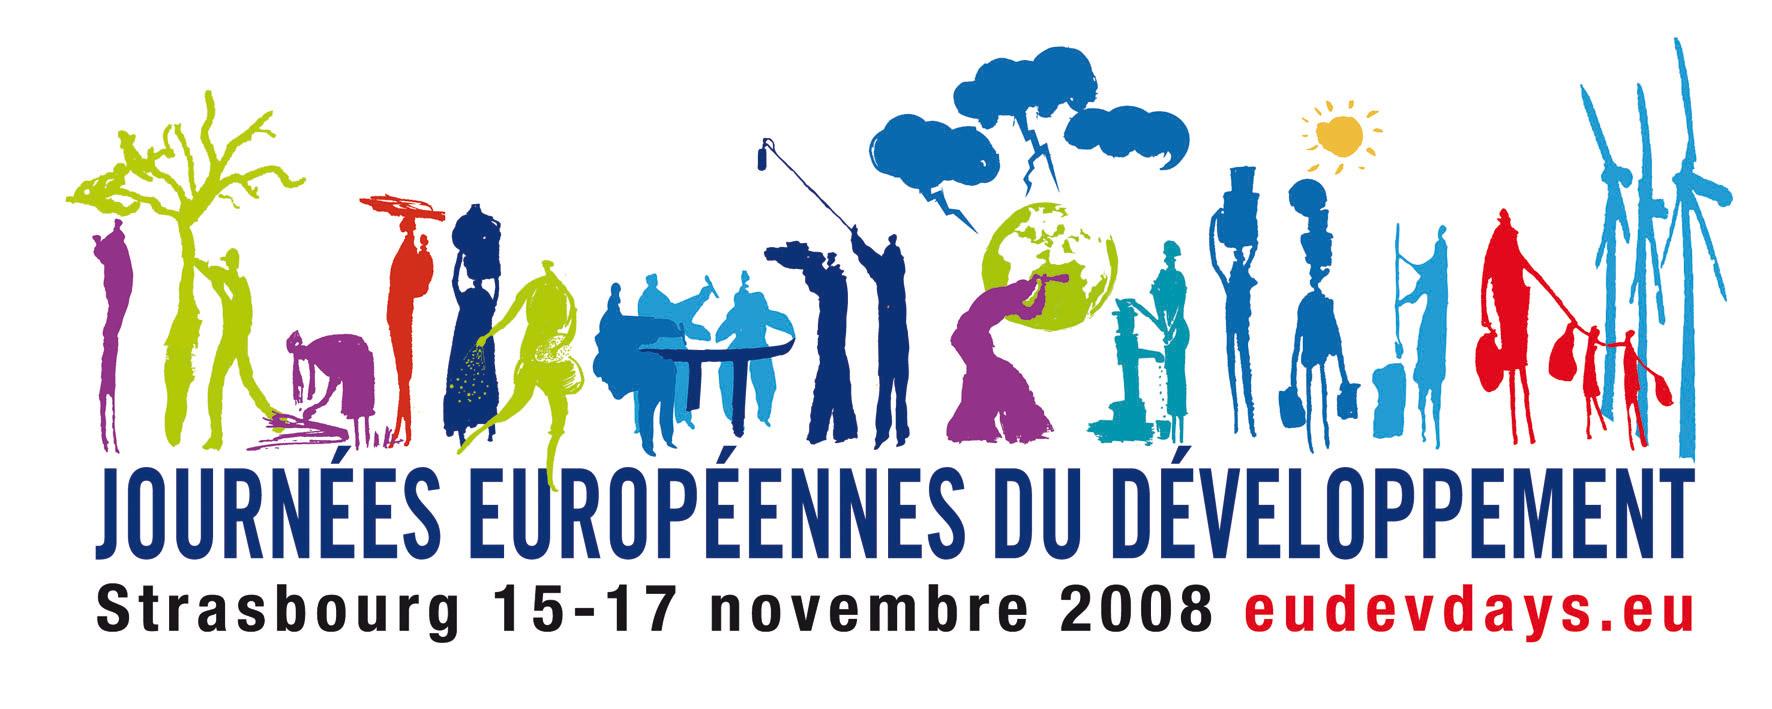 Strasbourg va accueillir les Journées européennes du développement.